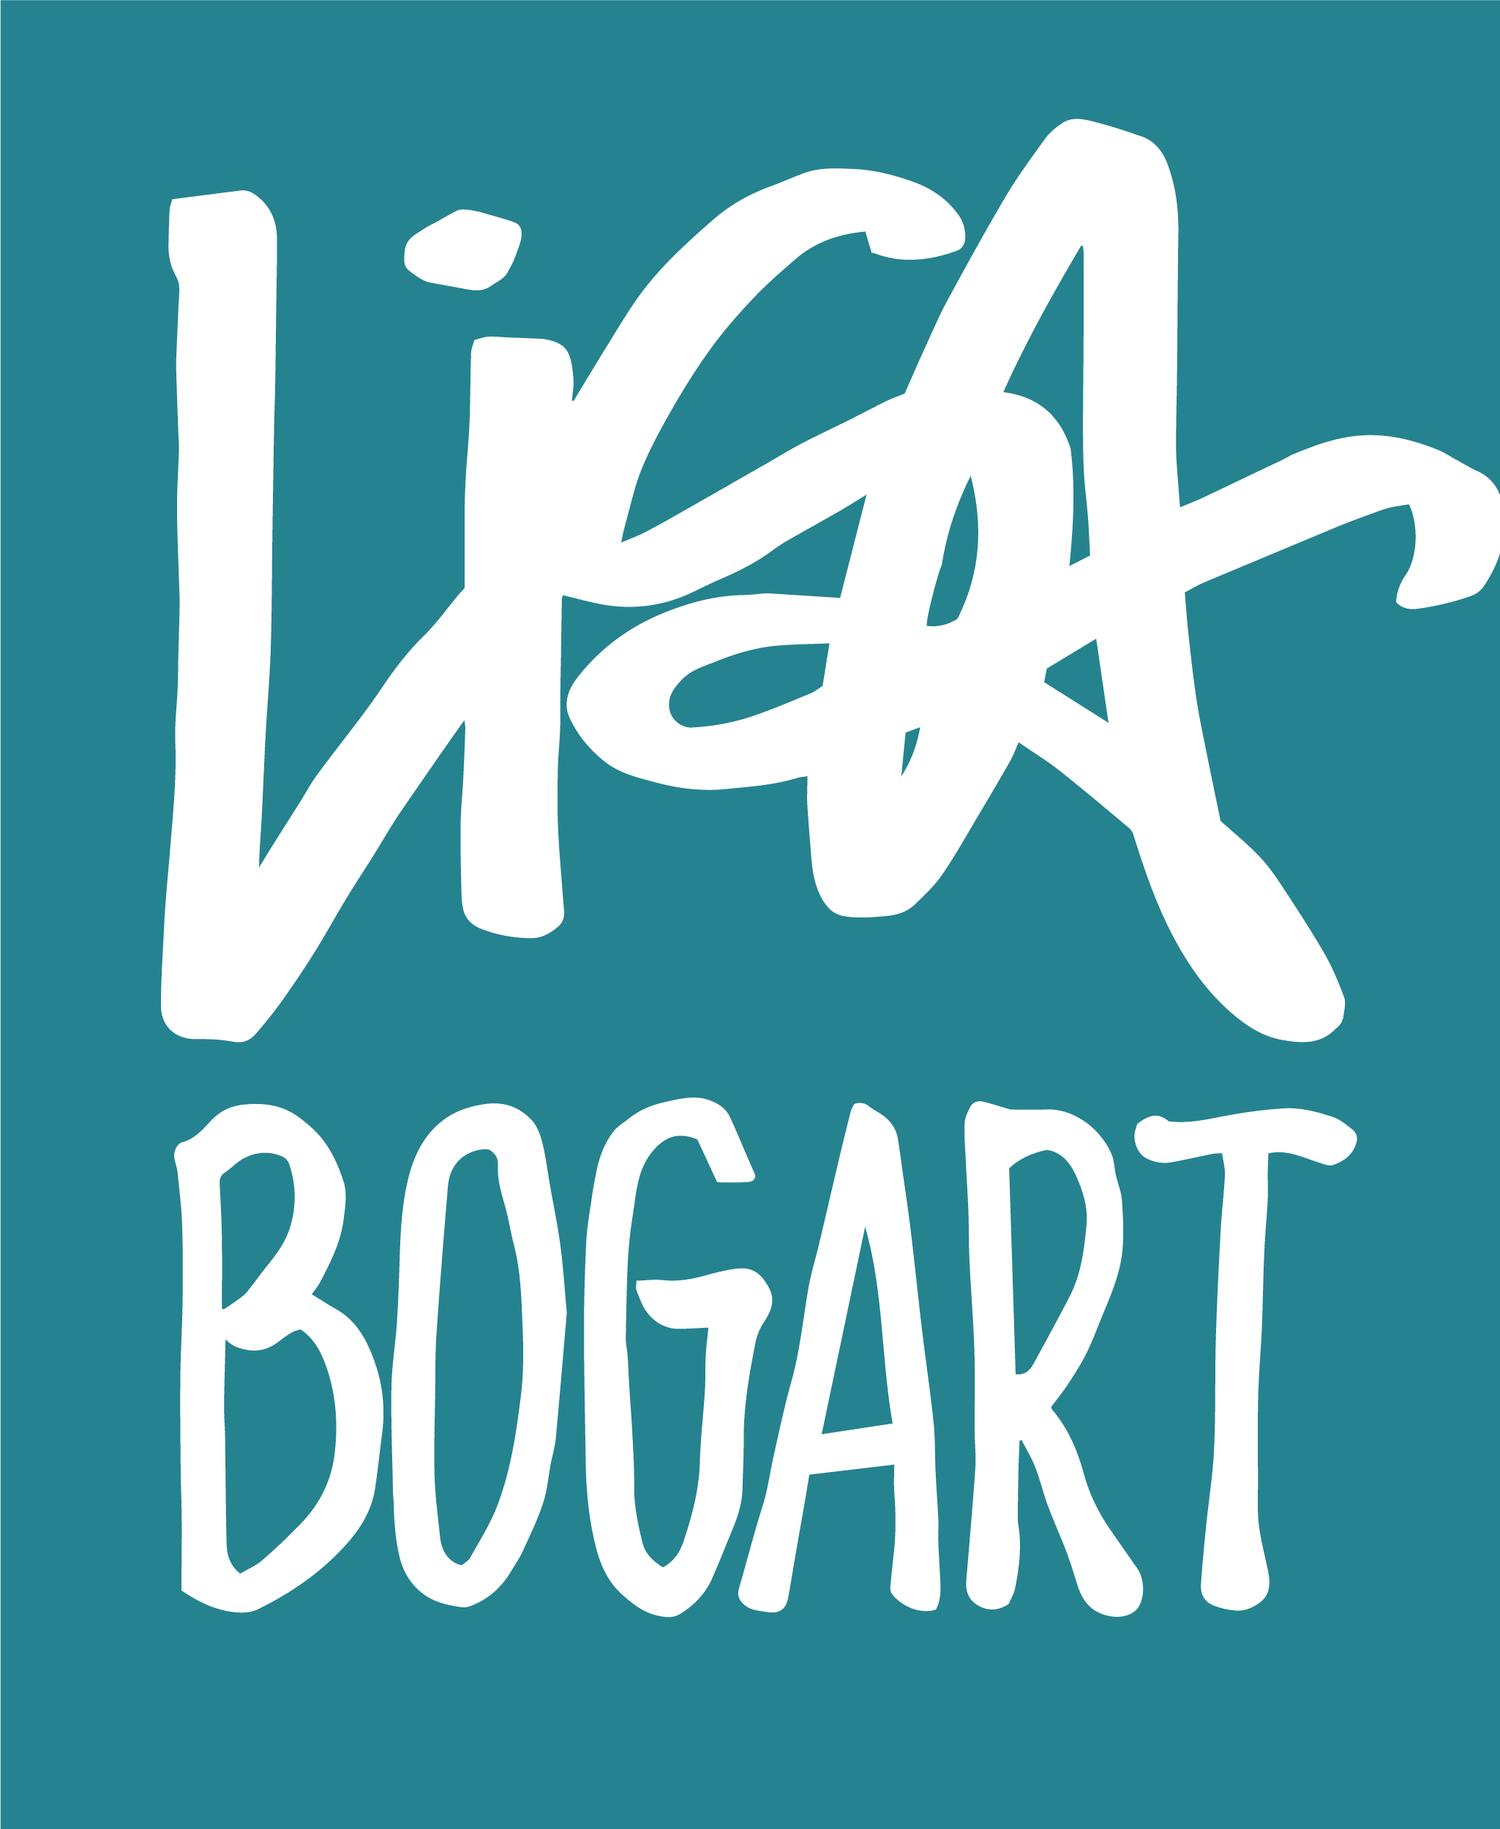 Lisa Bogart